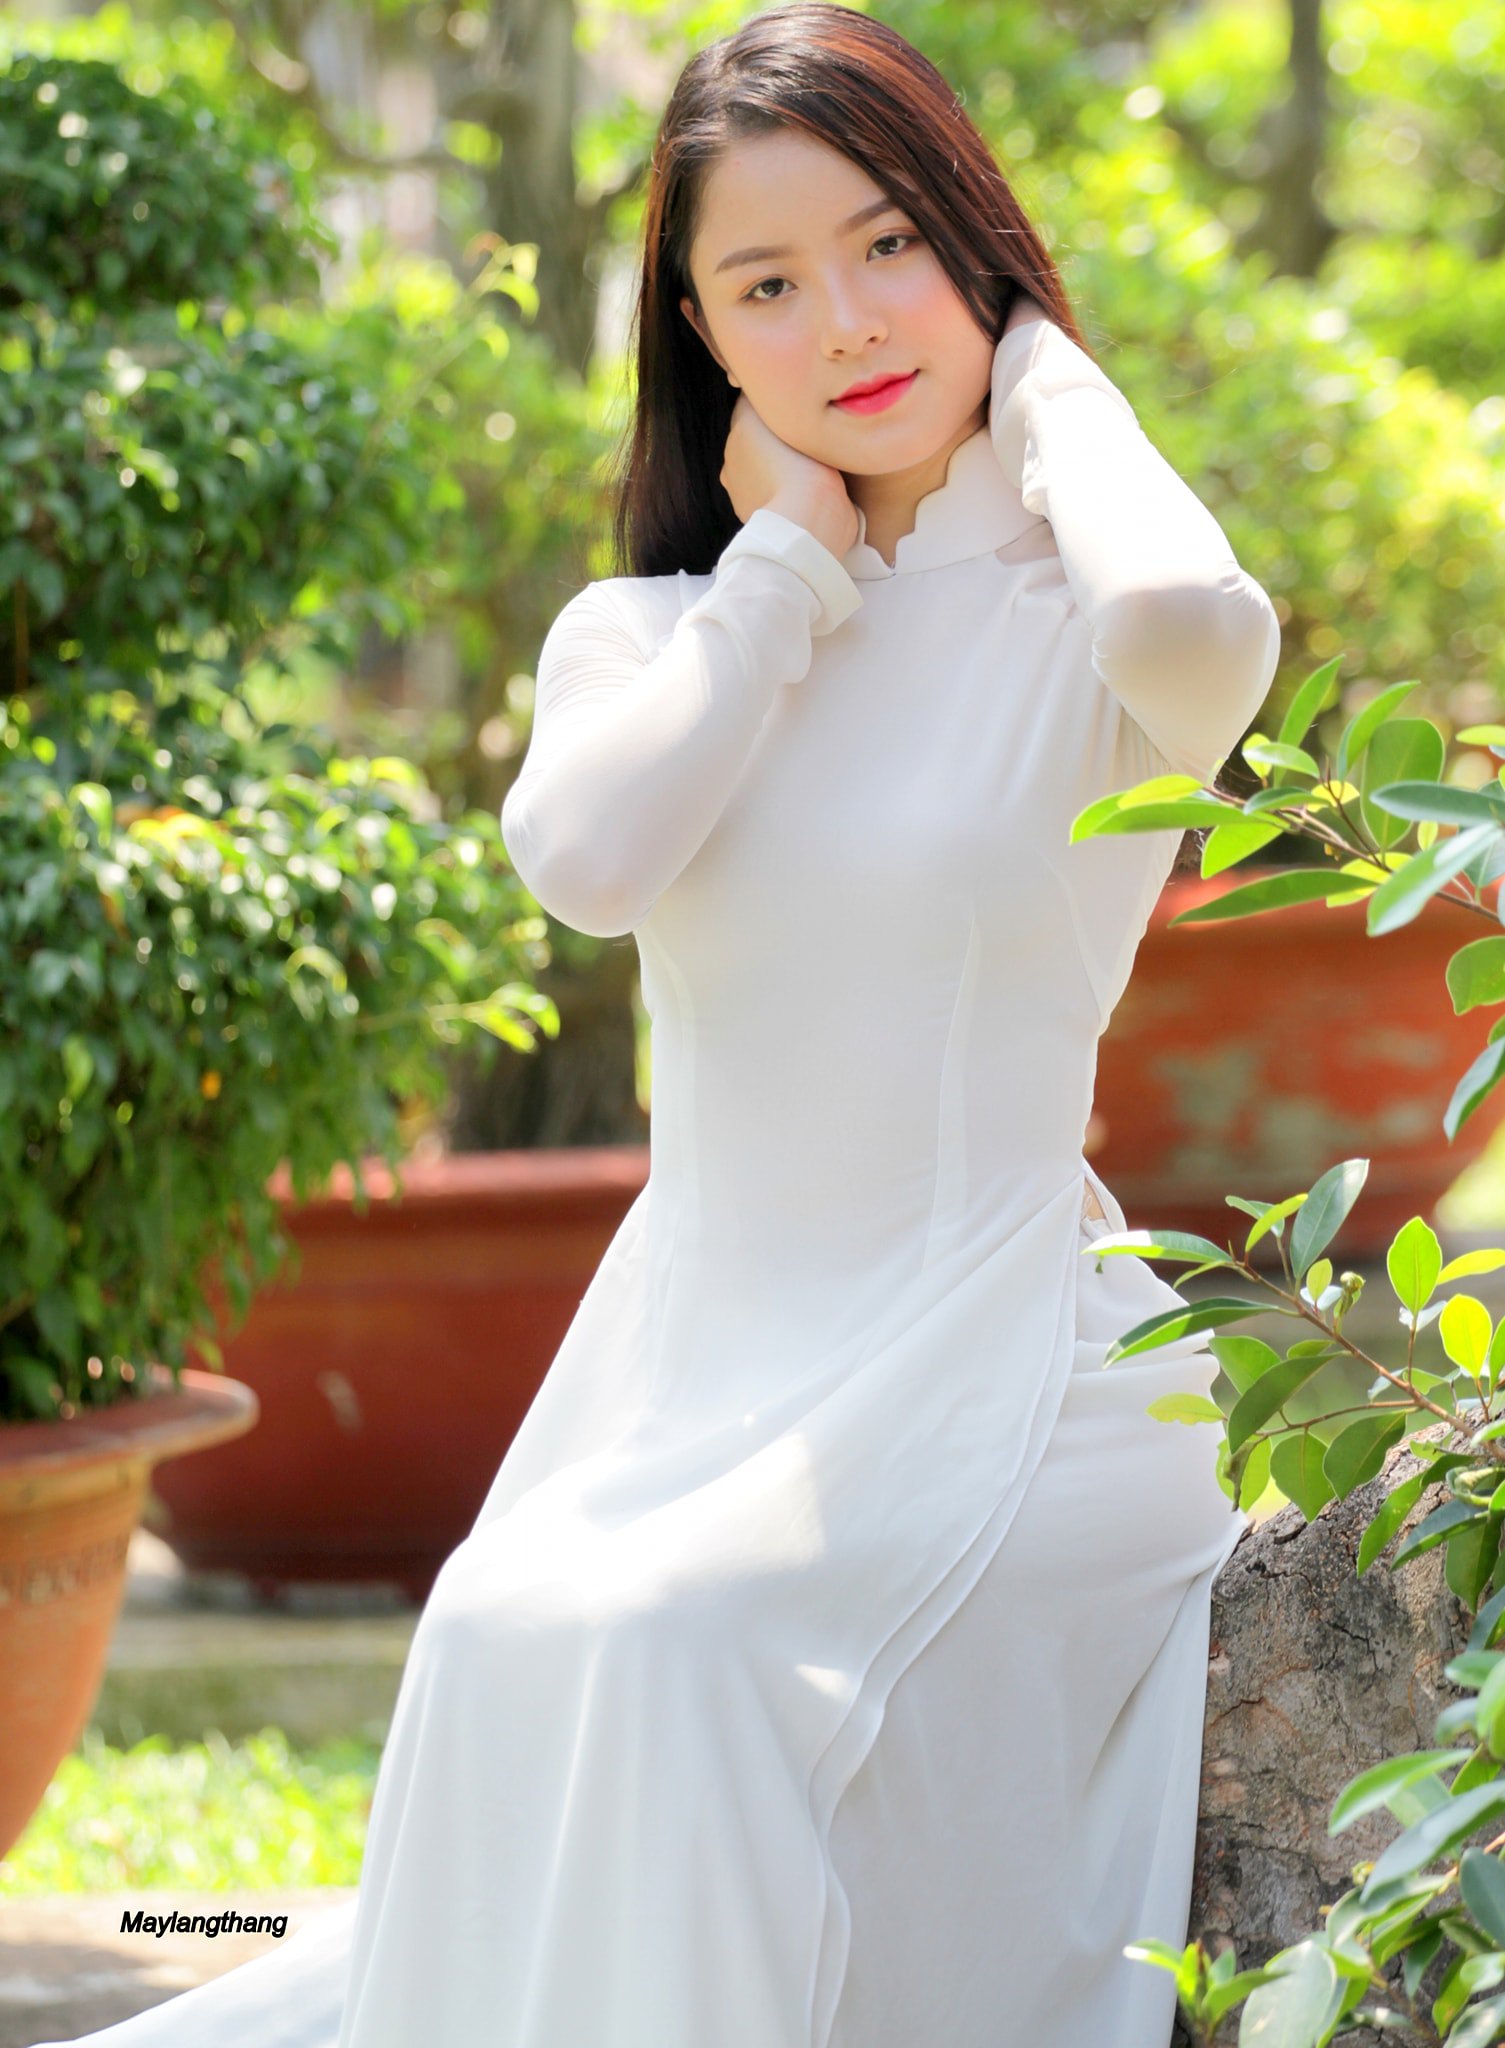 Tuyển tập girl xinh gái đẹp Việt Nam mặc áo dài đẹp mê hồn #55 - 5